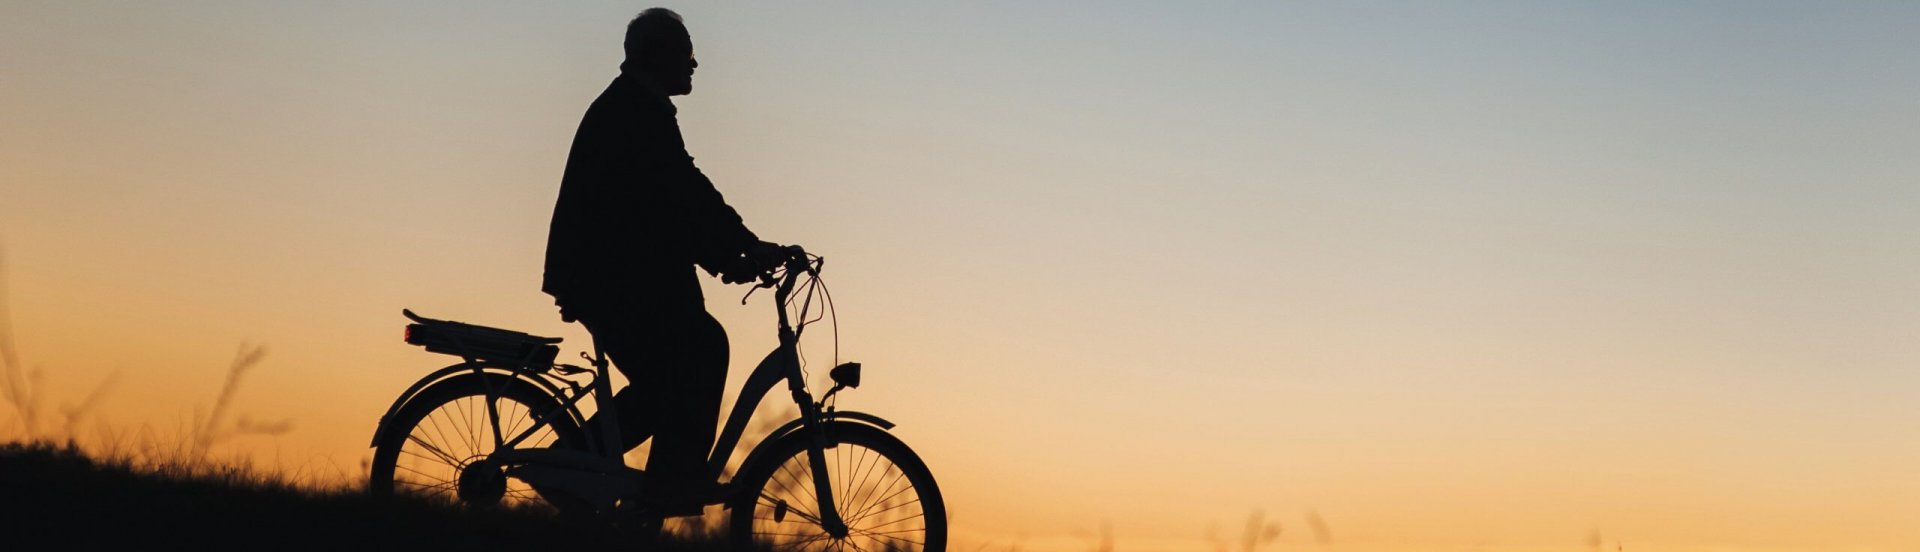 Silhouette eines Mannes, der mit dem Fahrrad einen Berg hinunterfährt